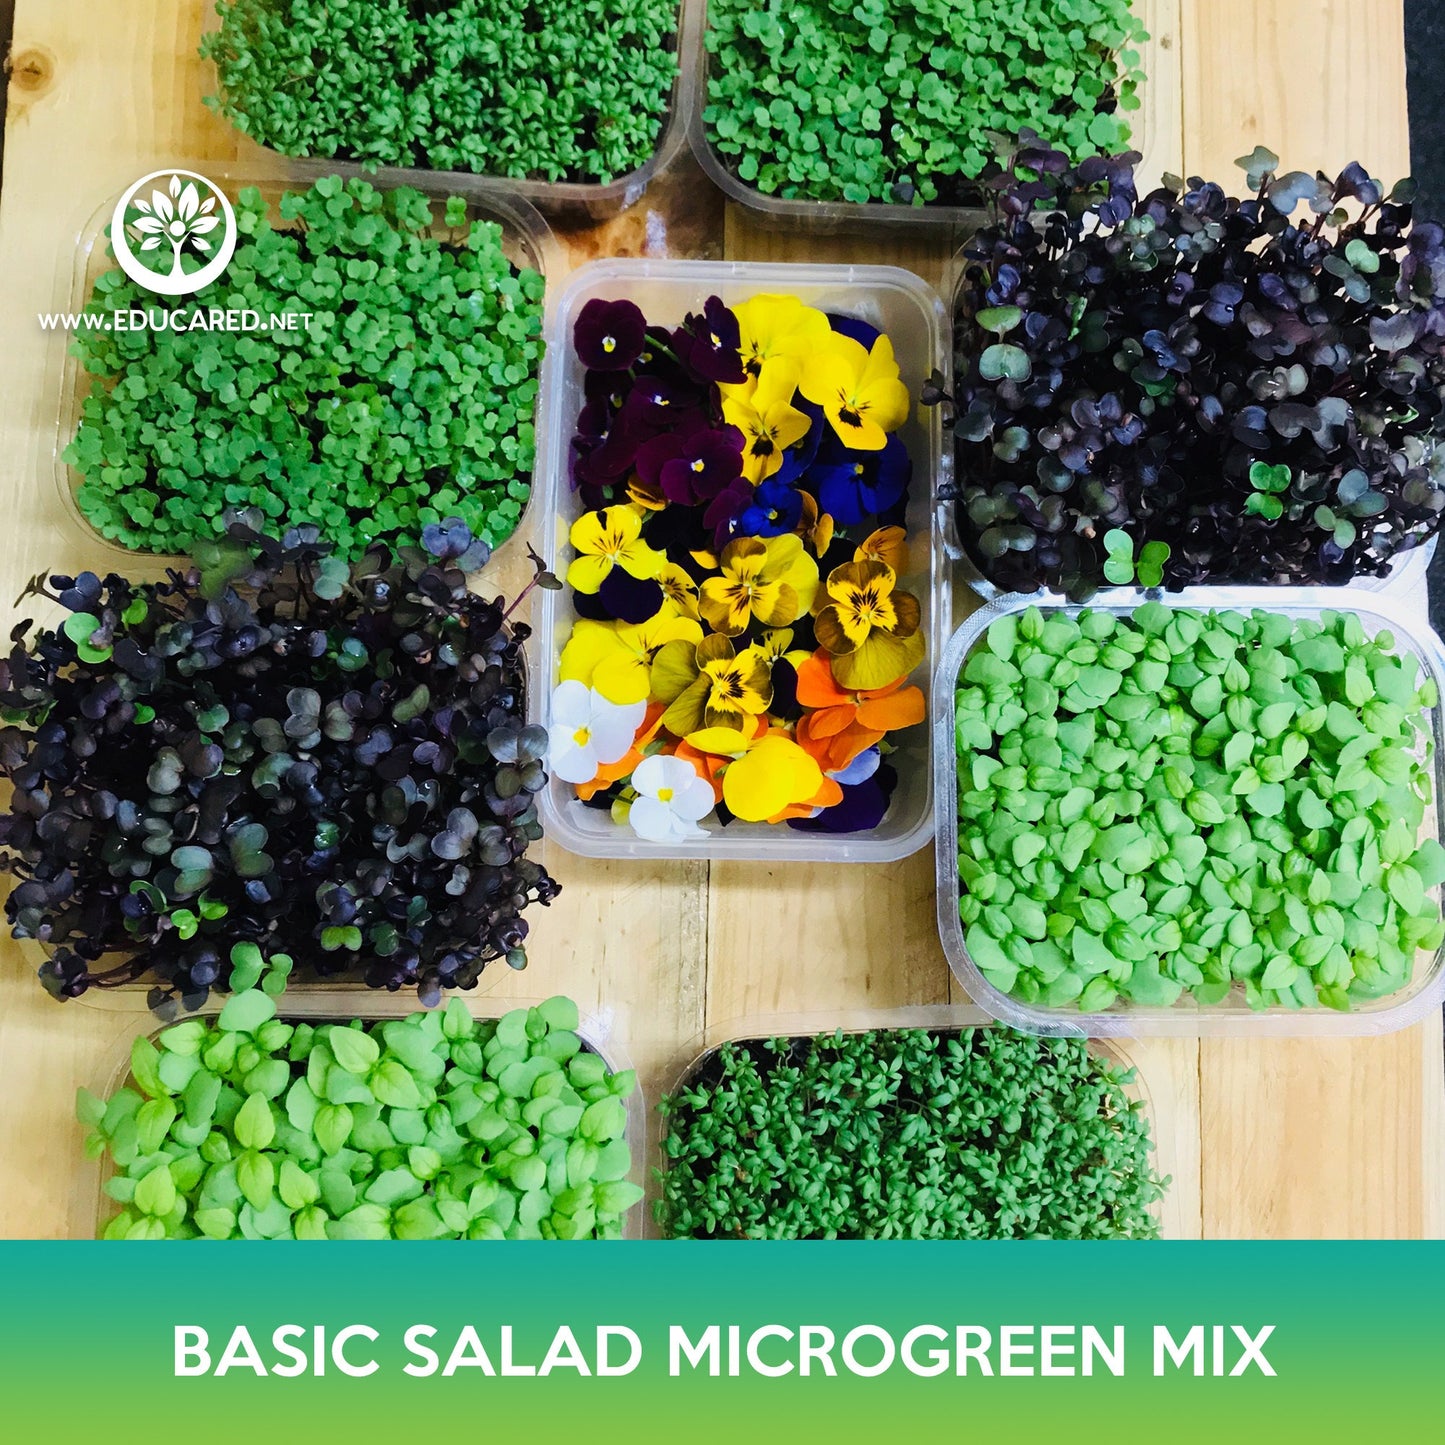 Basic Salad Microgreen Mix Seeds